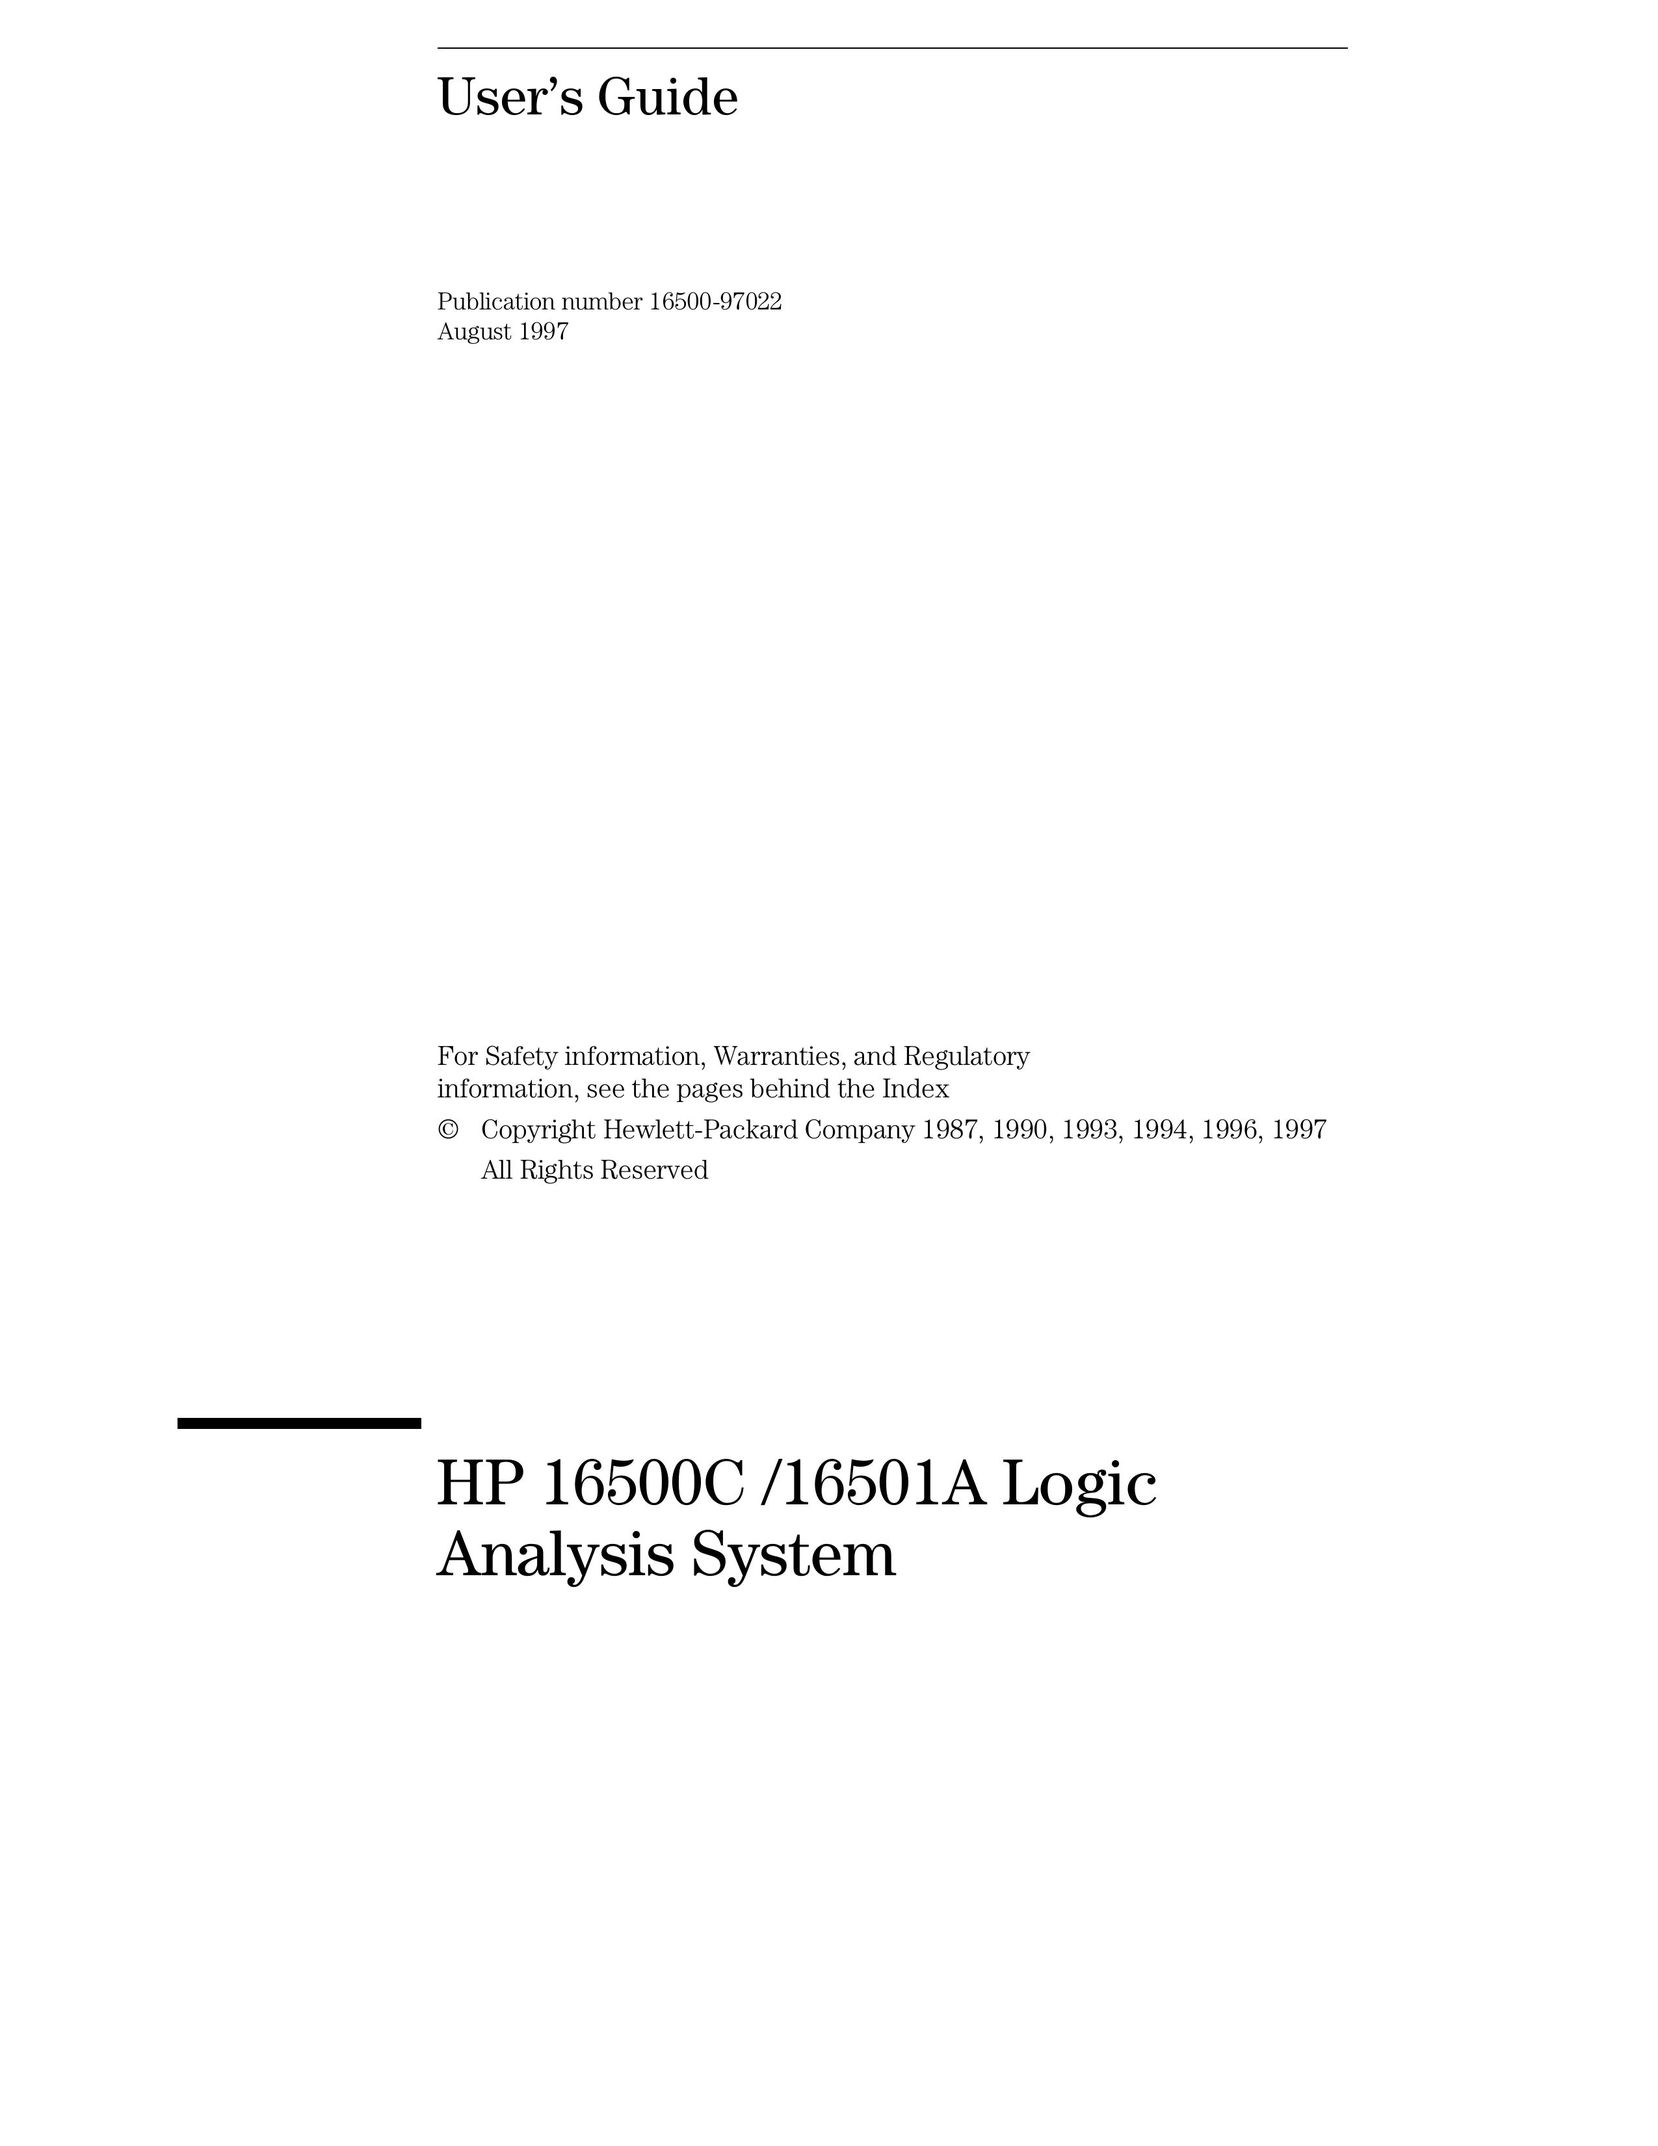 HP (Hewlett-Packard) 16501A LOGIC Computer Accessories User Manual